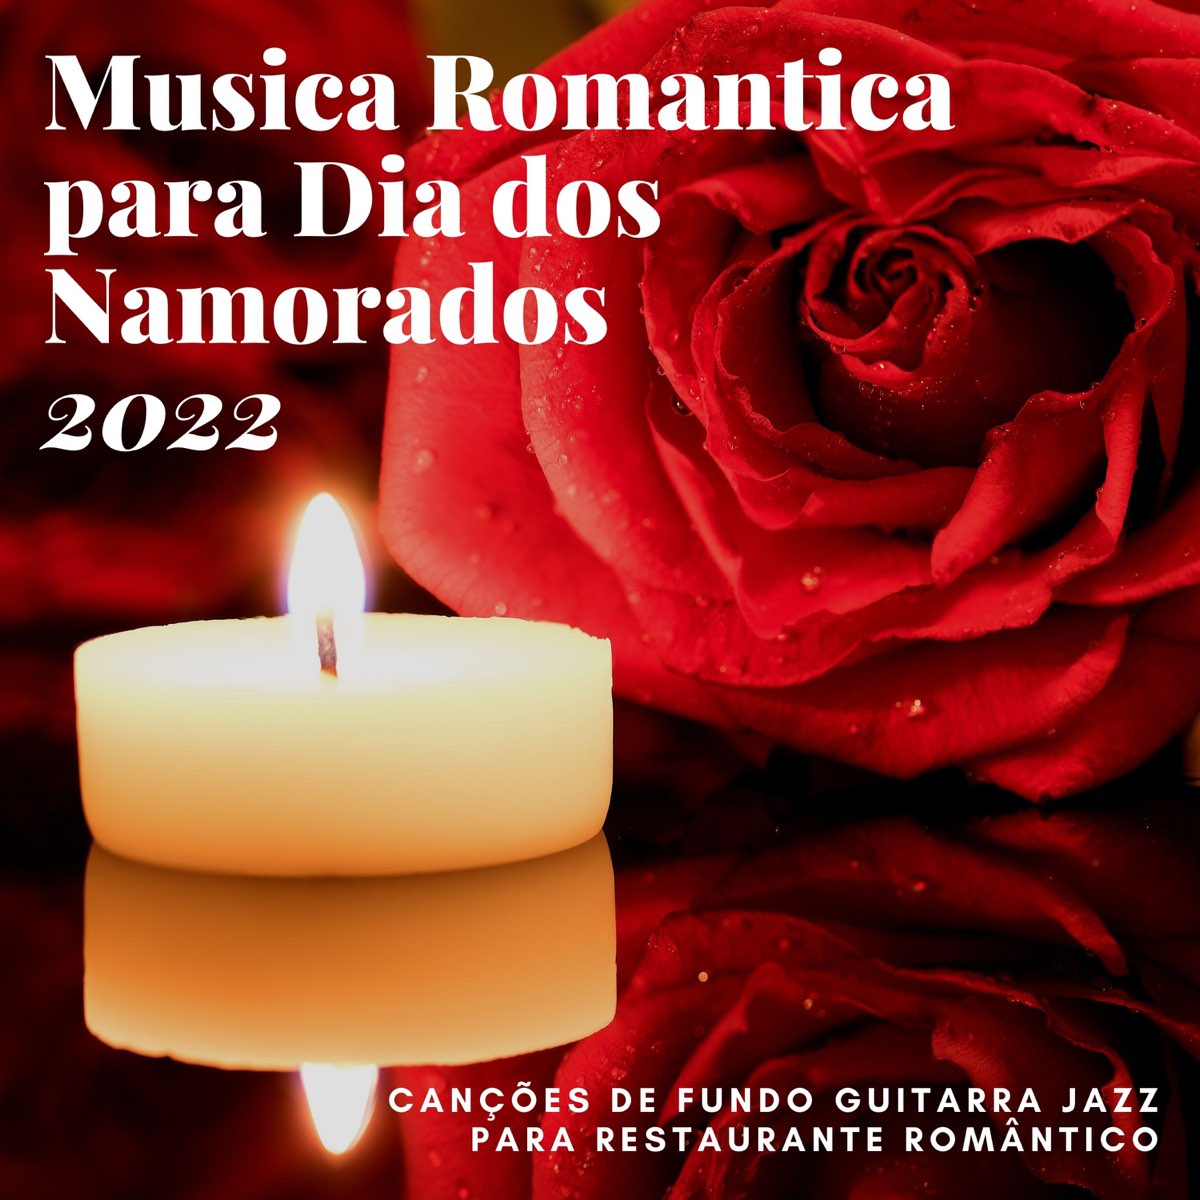 Música Romantica para Dia dos Namorados 2022 - Canções de Fundo Guitarra  Jazz para Restaurante Romântico de Cafezinho dos Reis no Apple Music